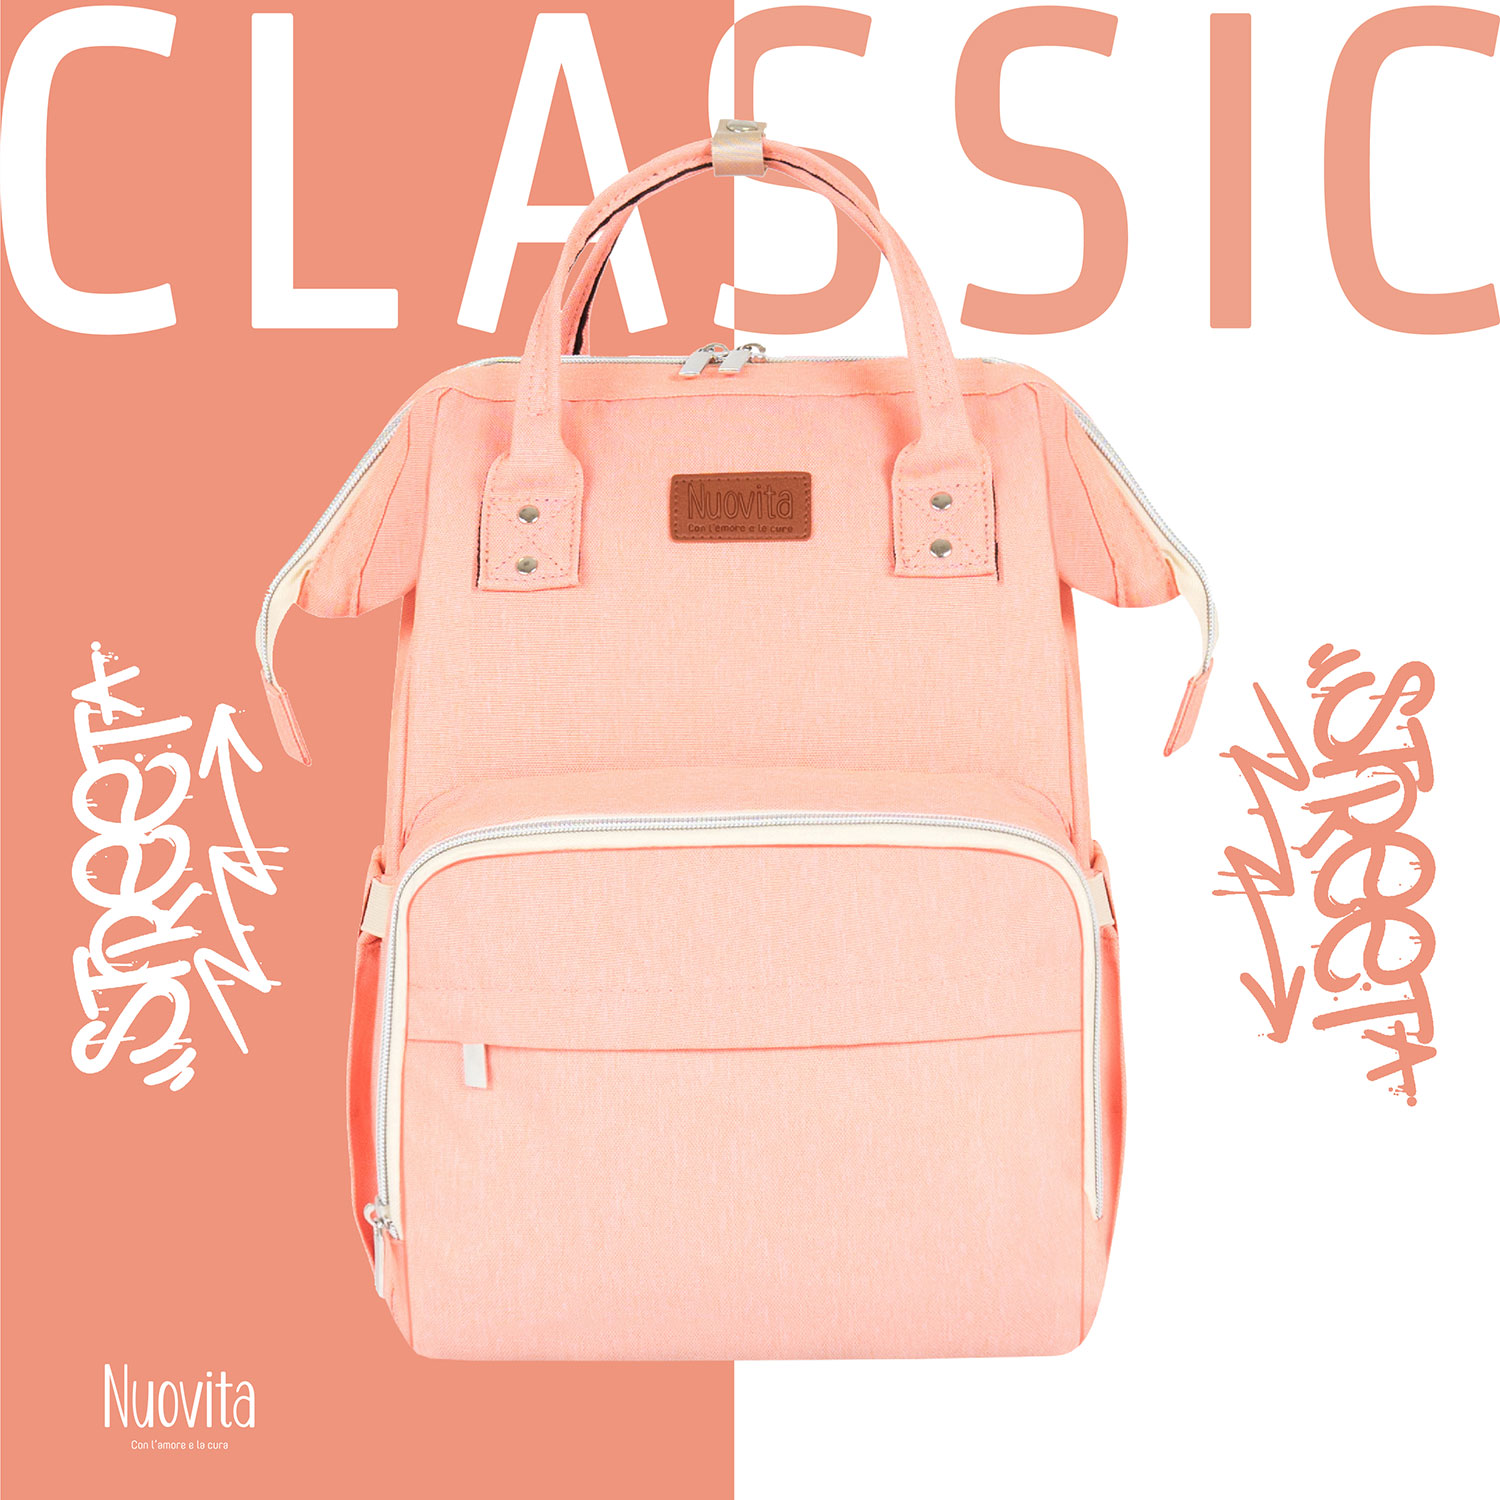 Рюкзак Nuovita CAPCAP classic (Rosa/Розовый) nuovita рюкзак для мамы capcap classic